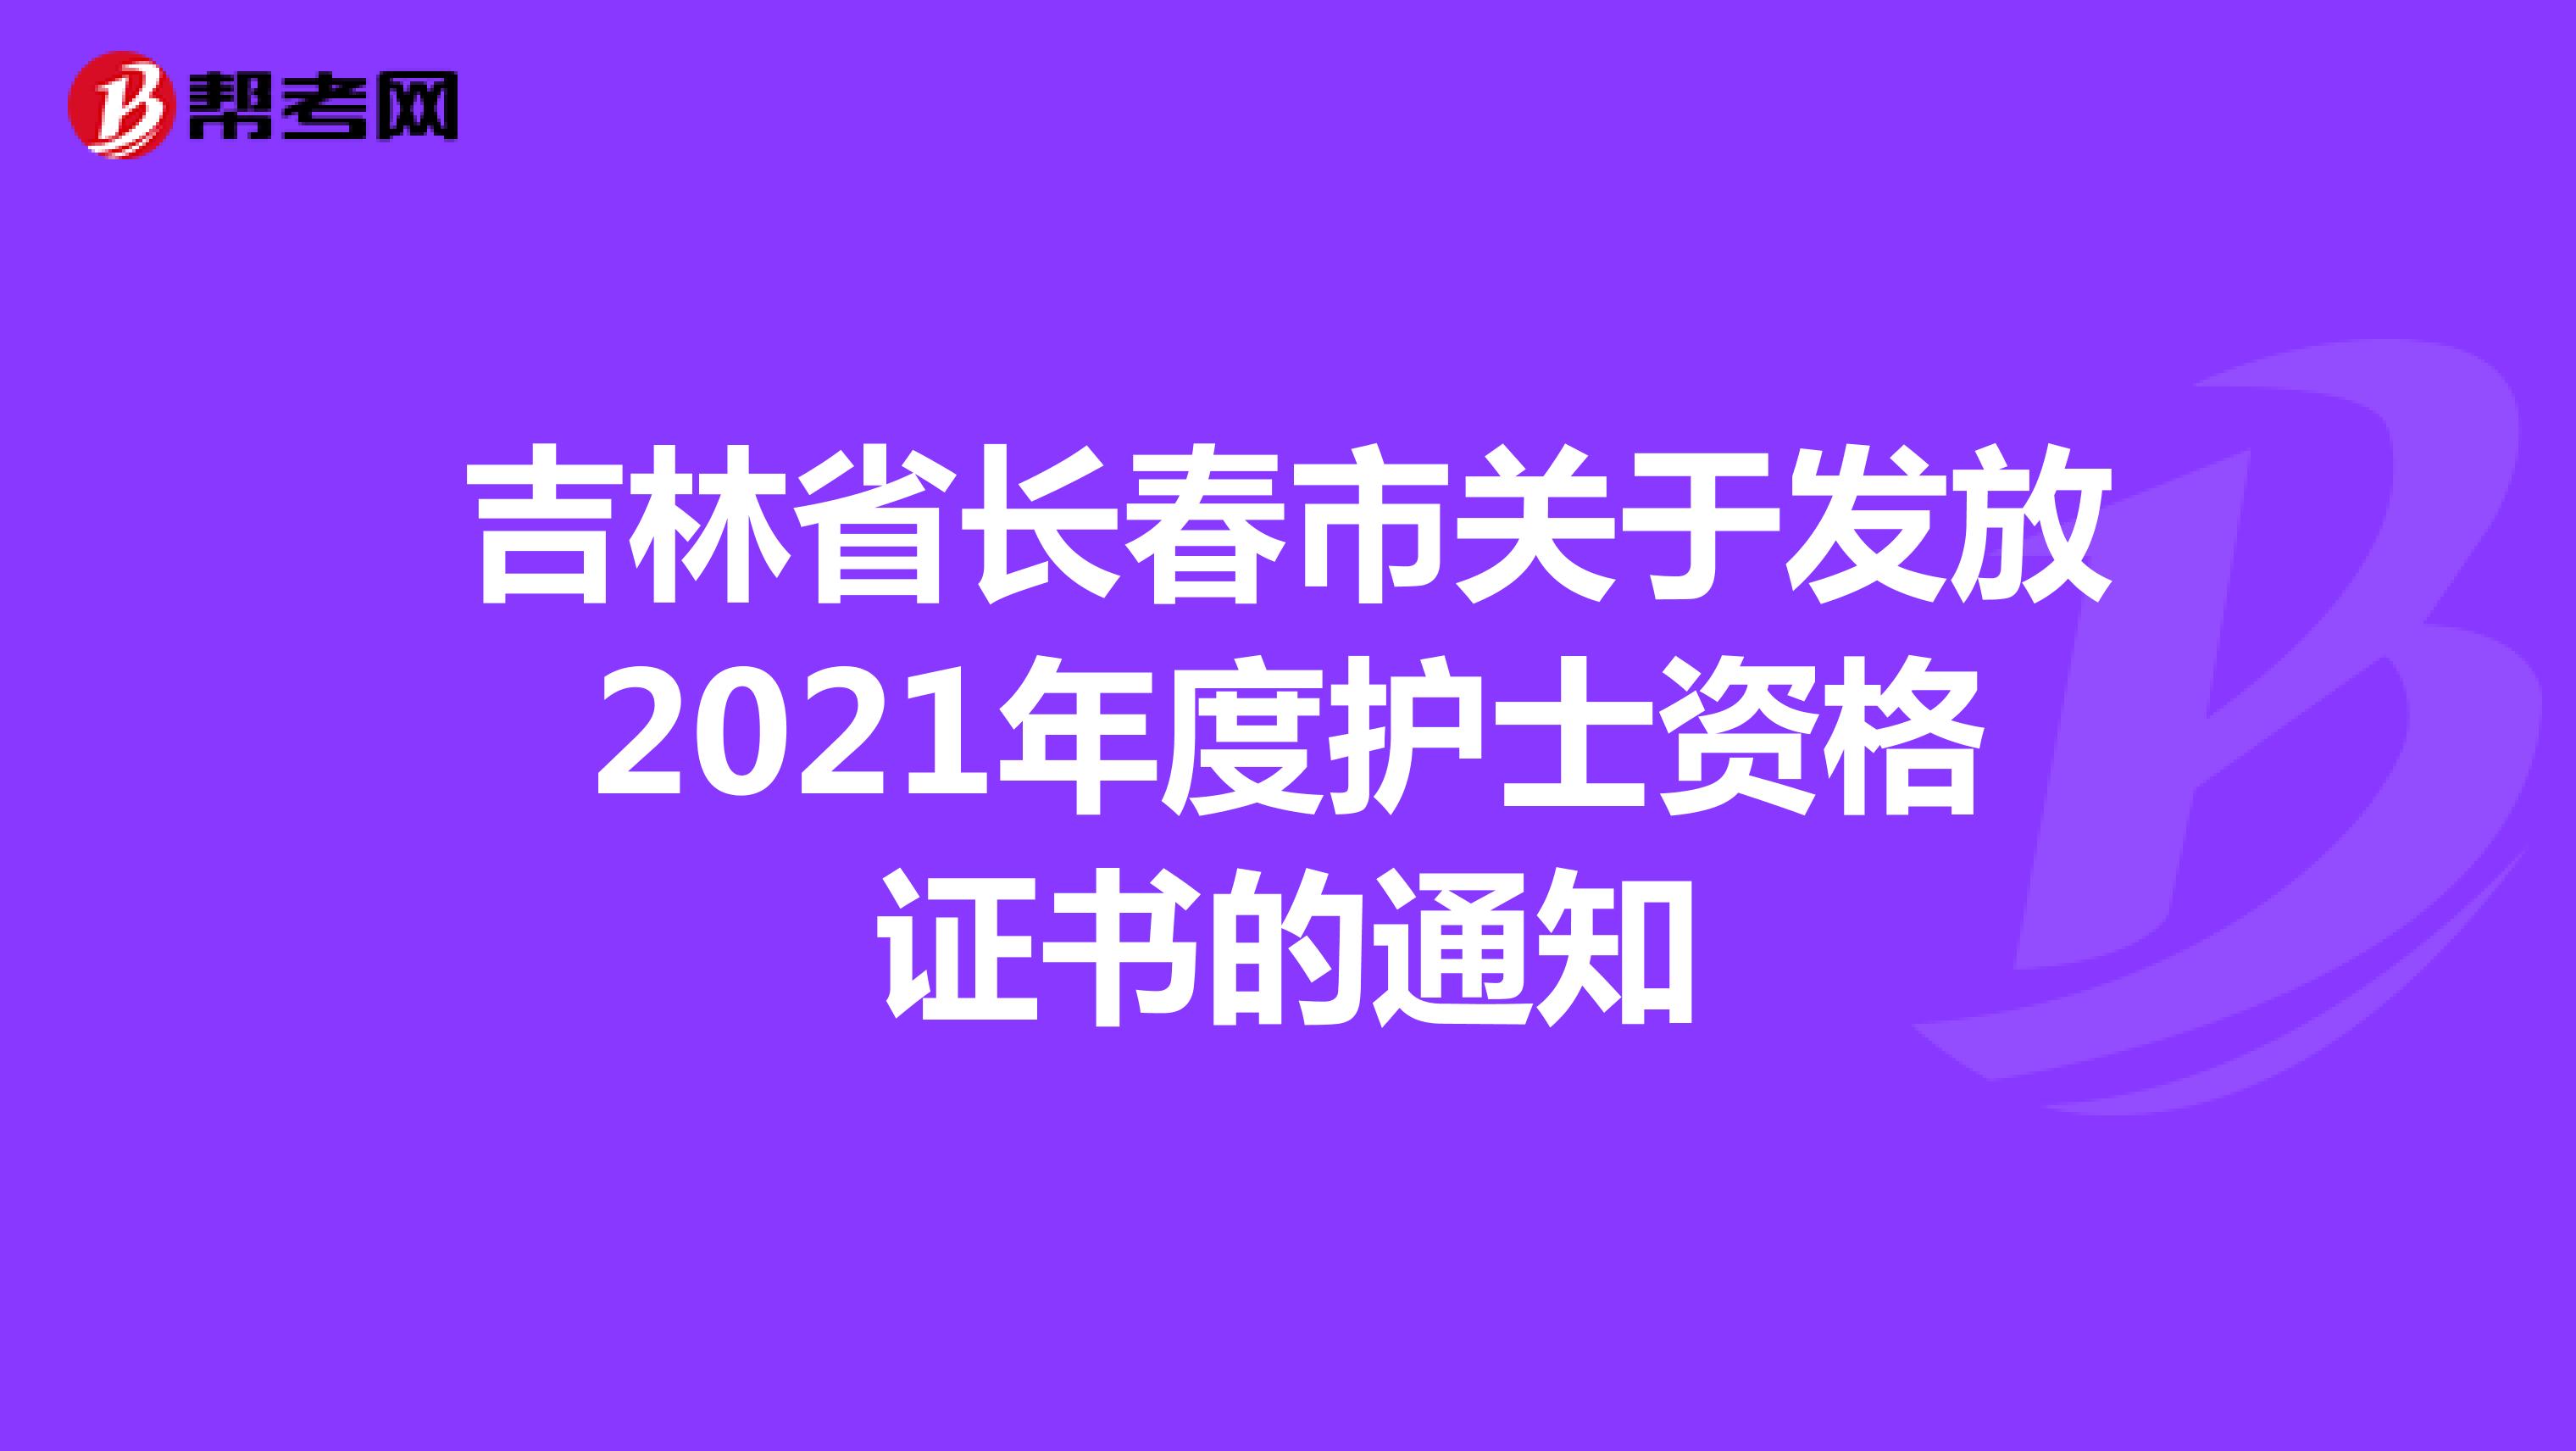 吉林省长春市关于发放2021年度护士资格证书的通知